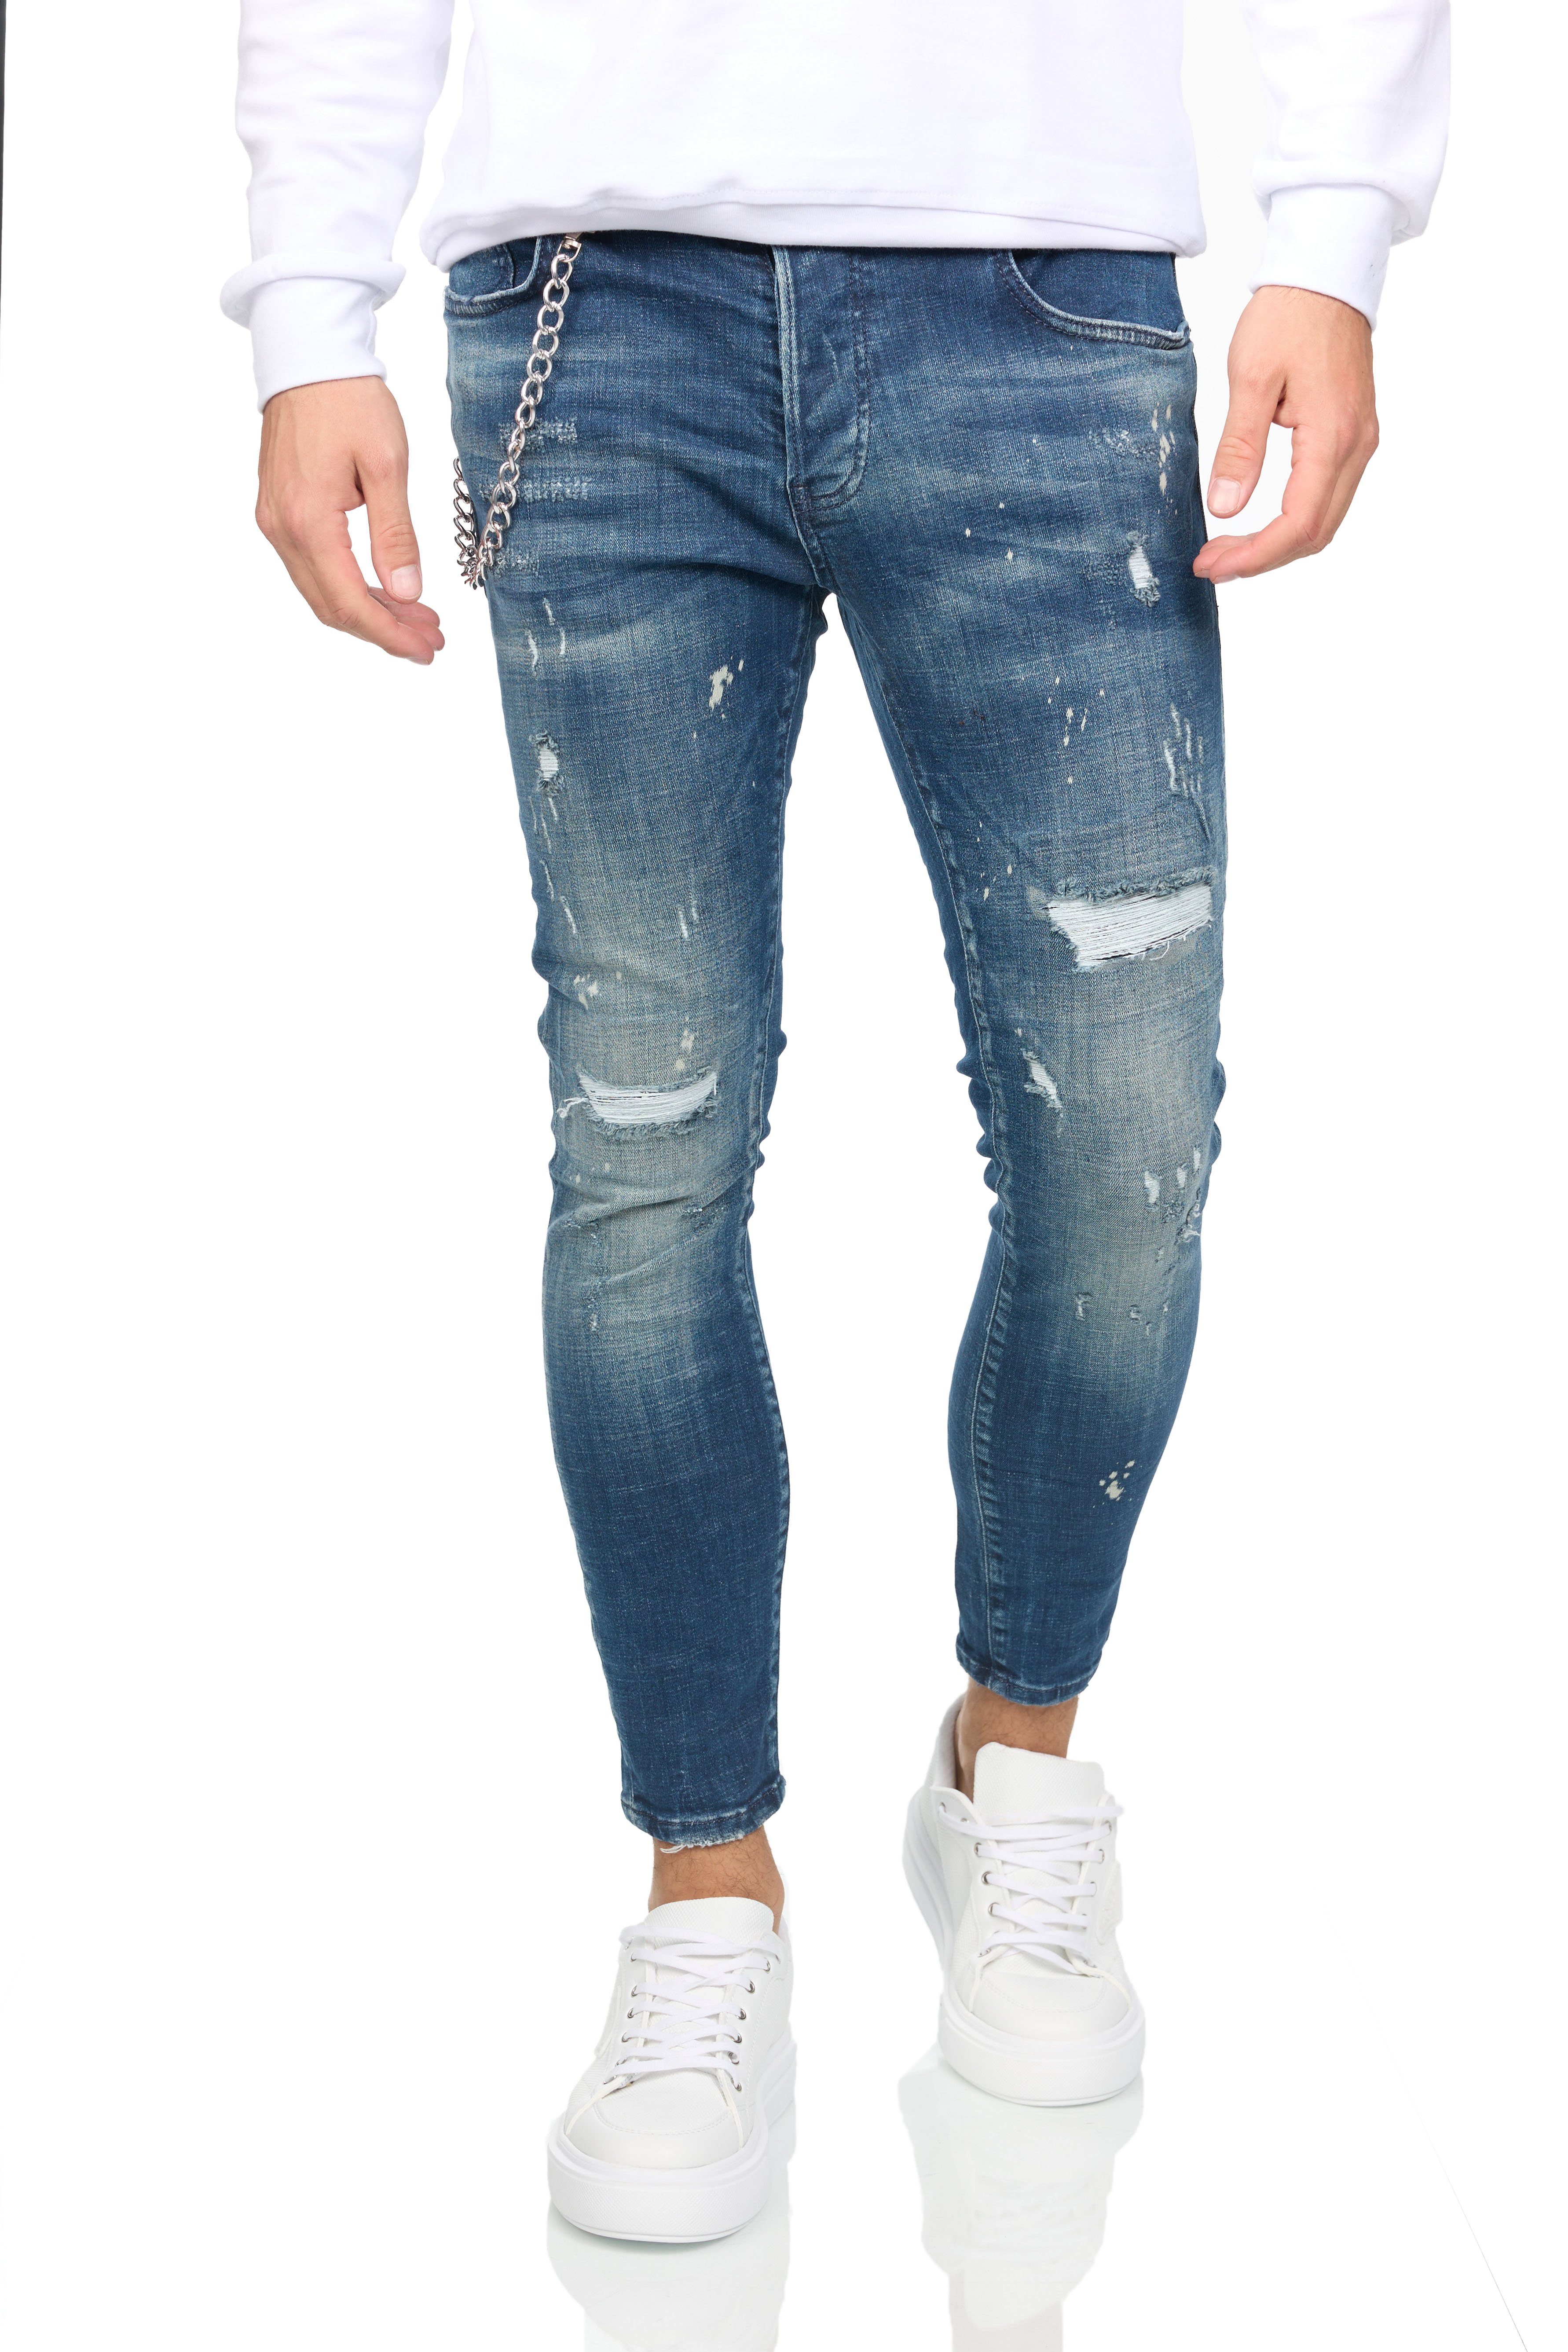 Aktionsrabatt Denim Distriqt Skinny-fit-Jeans Super stretchige Destroyed 15710 Jeans Skinny im Look DH-BI